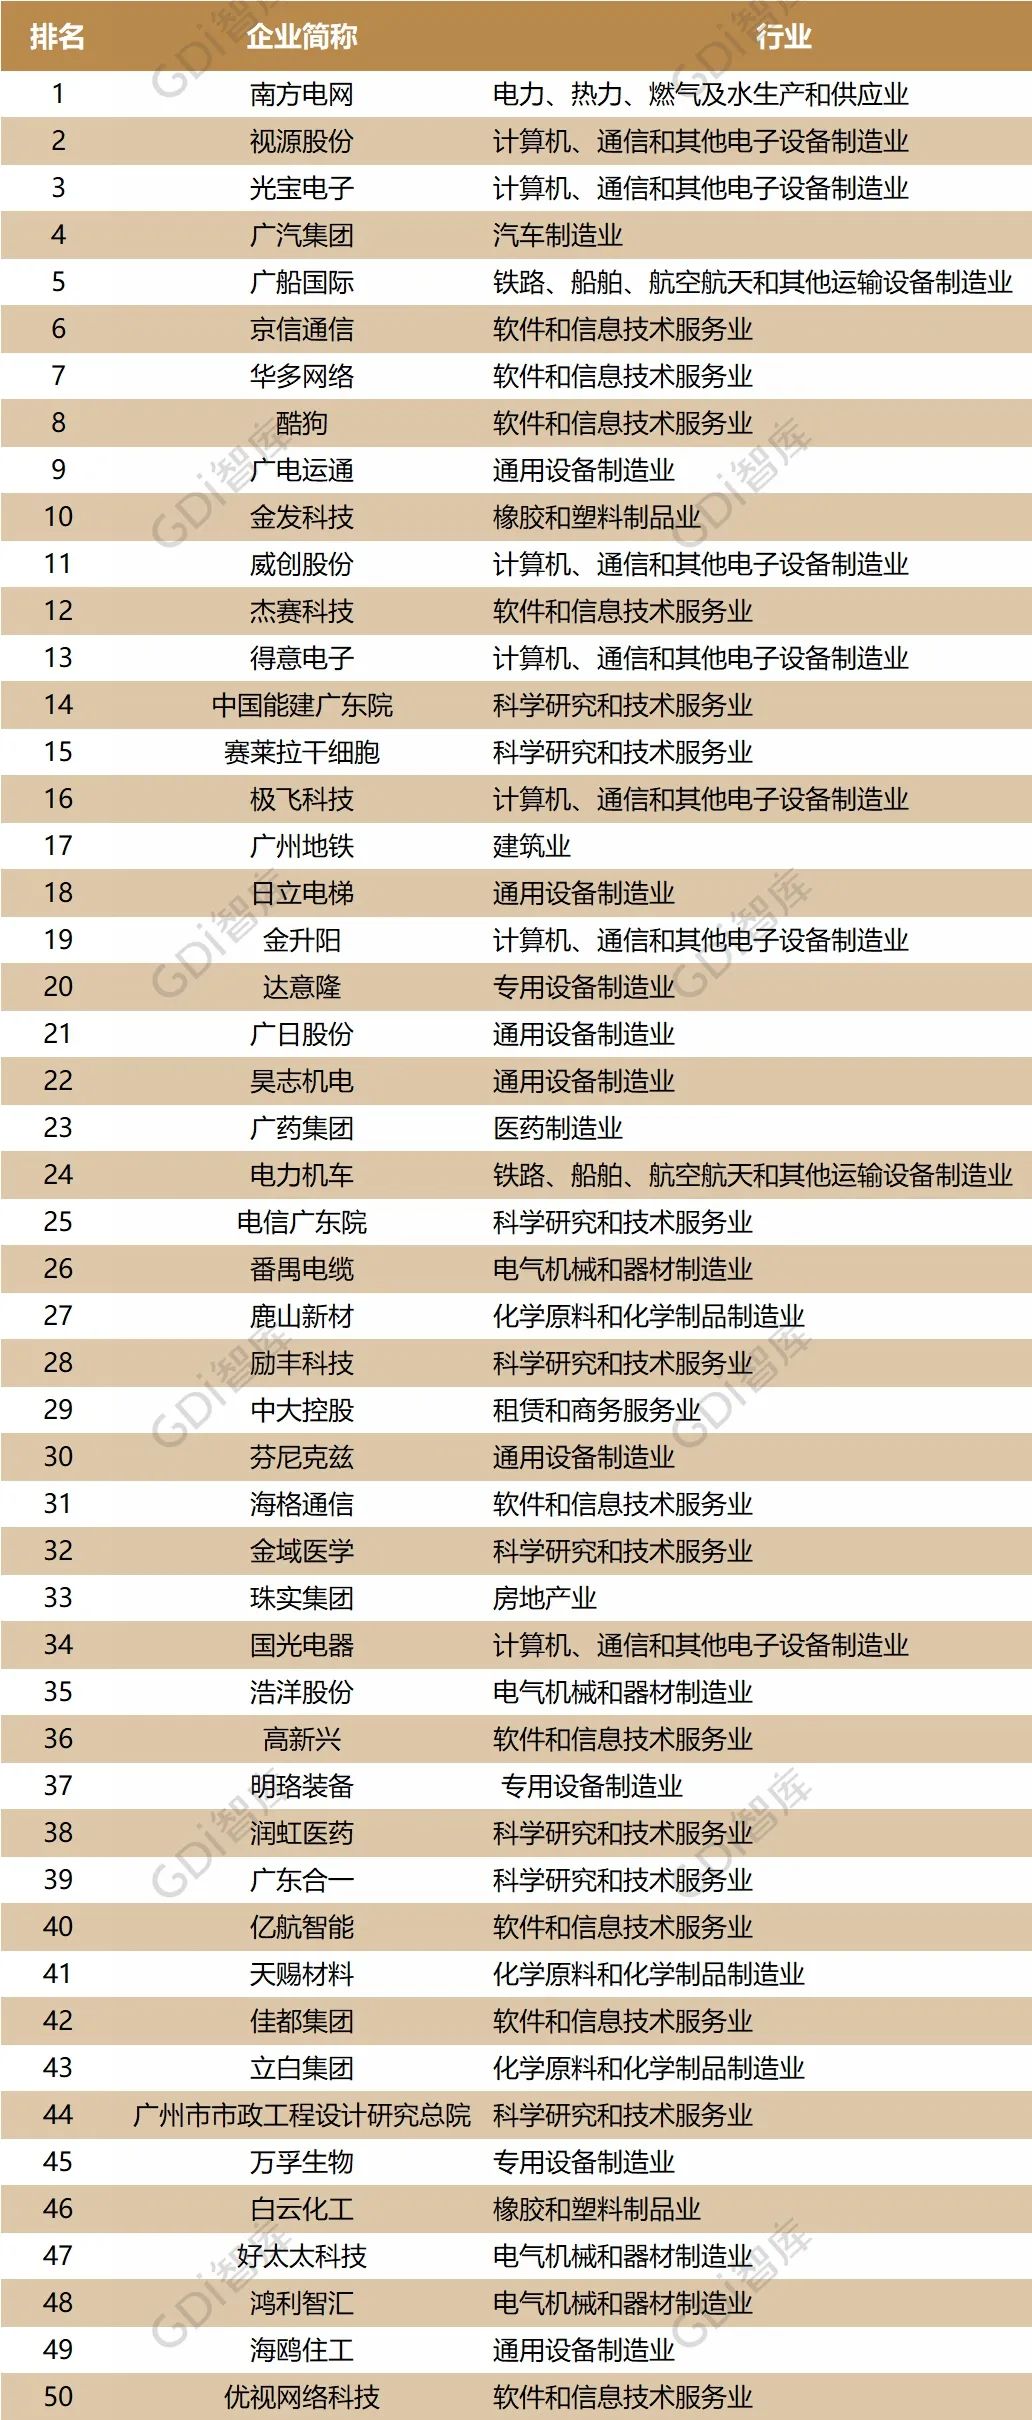 广州企业创新50强榜发布